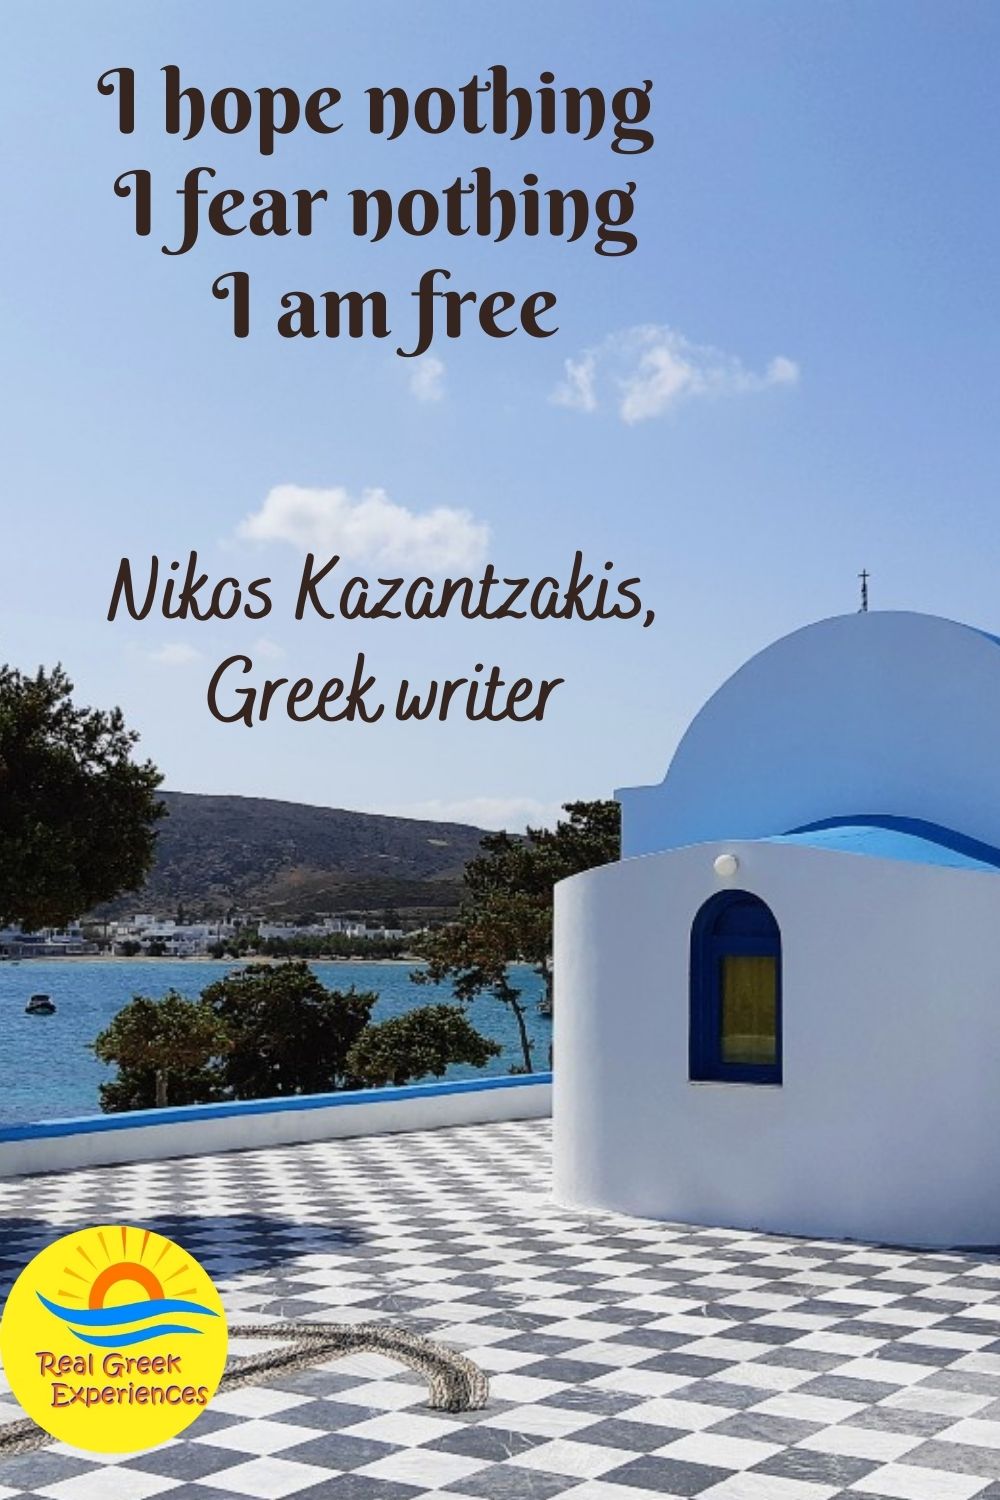 Famous Greek quotes - I hope nothing - I fear nothing - I am free - Nikos Kazantzakis